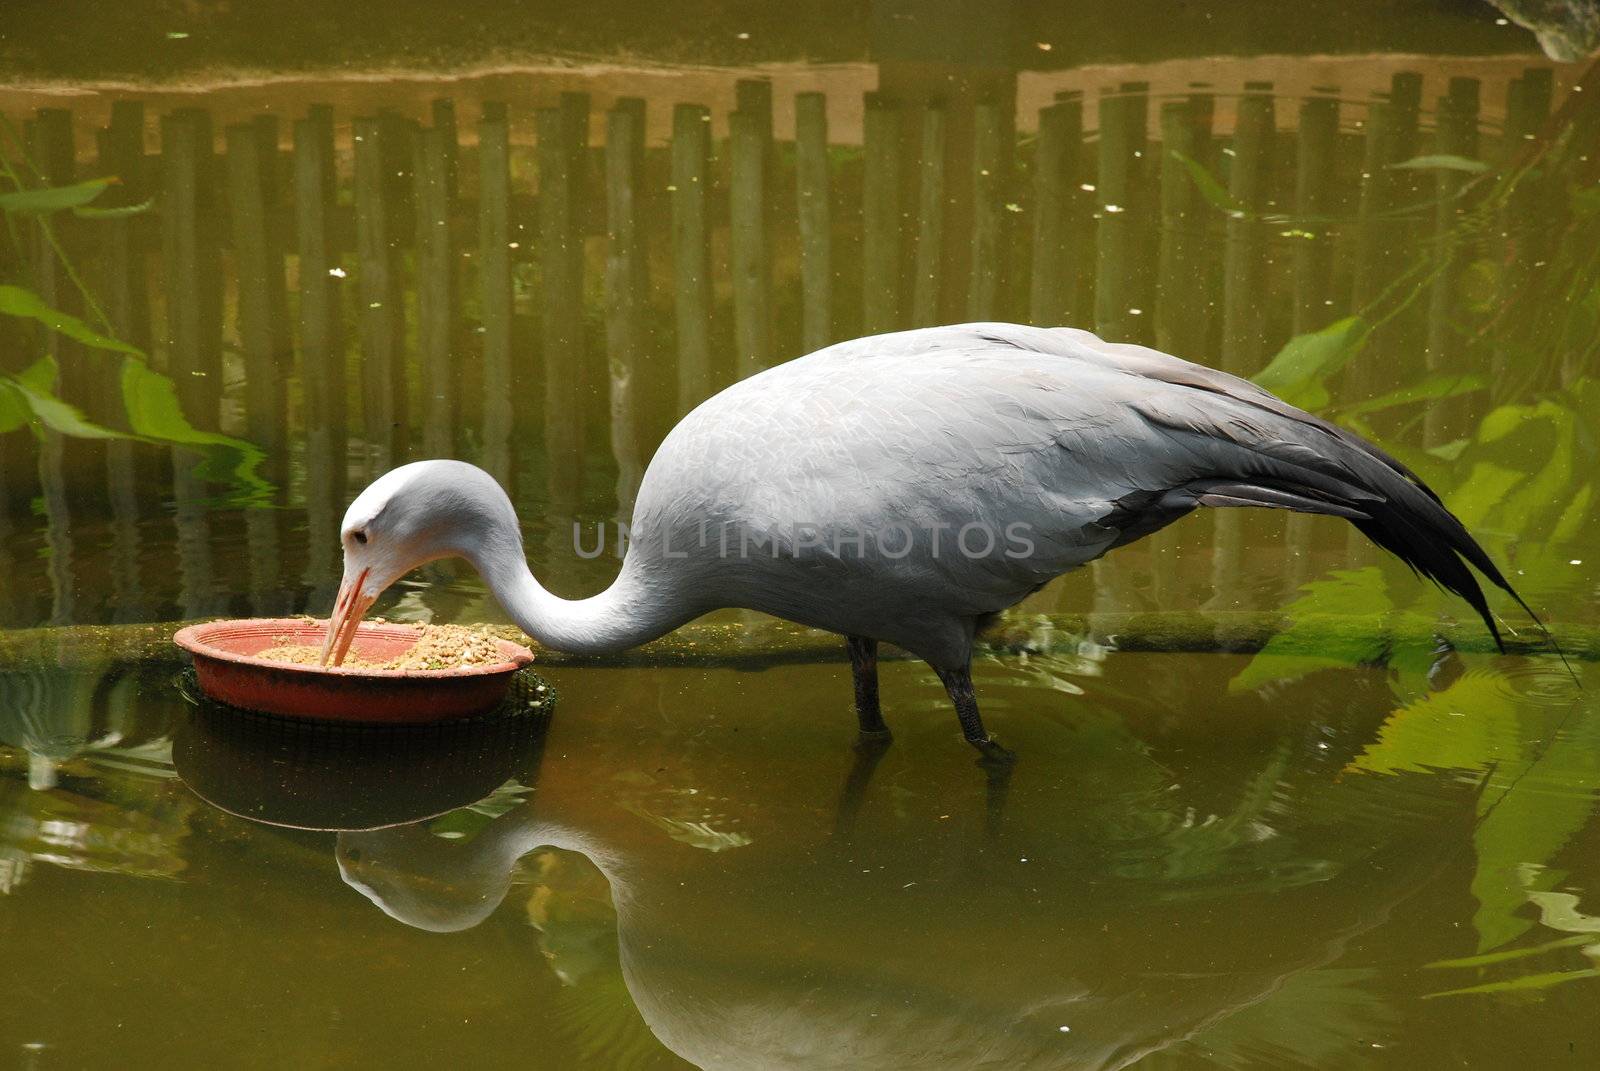 A blue crane bird taking food from a pot